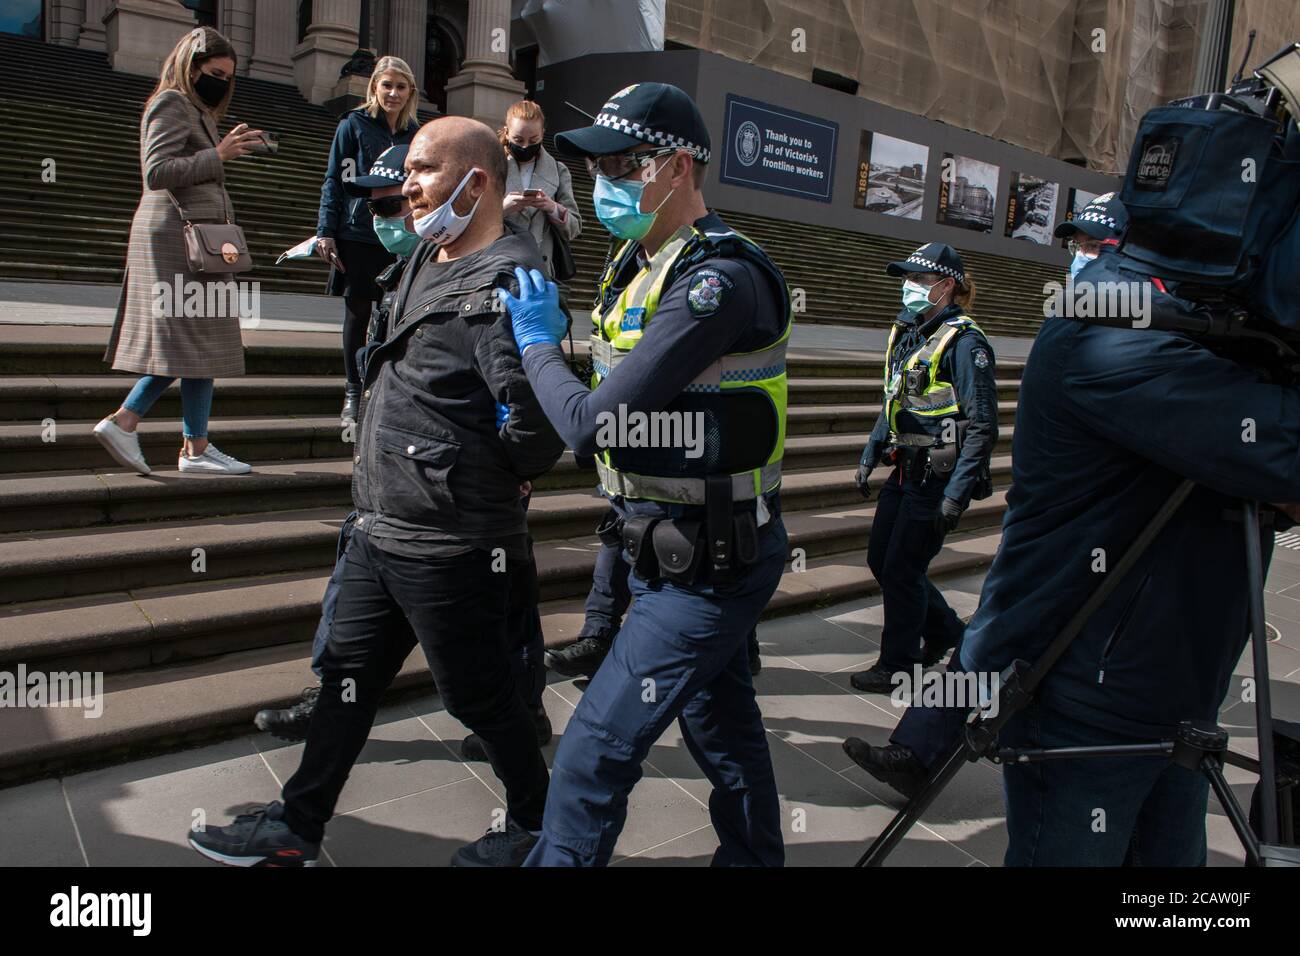 Melbourne, Australien am 9. August 2020 verhaften einige der zahlreichen viktorianischen Polizeibeamten, die gegen maskenfeindliche Proteste eingesetzt wurden, einen Mann, weil sie sich weigerten, eine Maske außerhalb des Landtags zu verhaften. Kredit: Michael Currie/Alamy Live Nachrichten Stockfoto